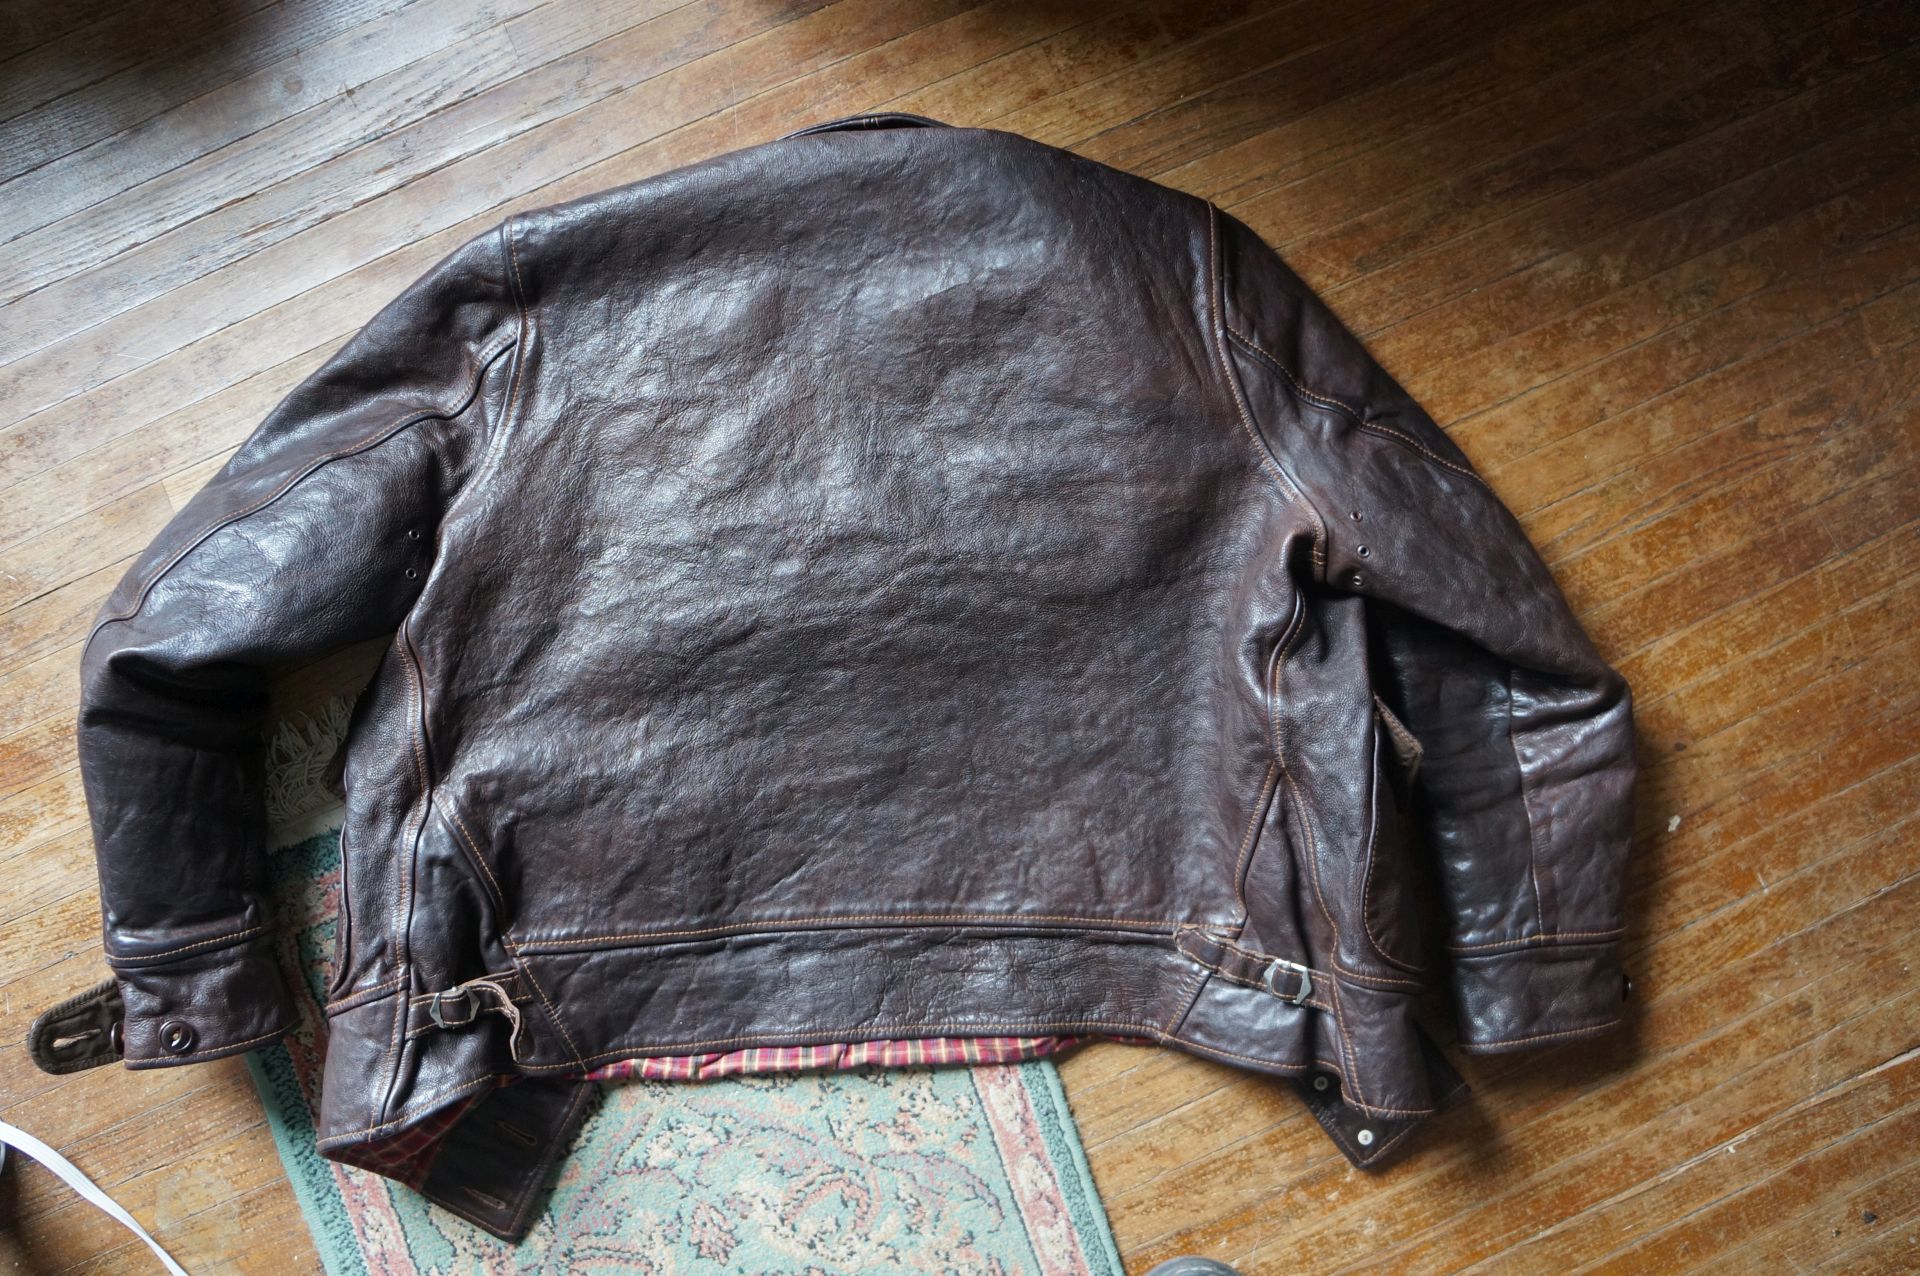 Badalassi jacket photos. | The Fedora Lounge